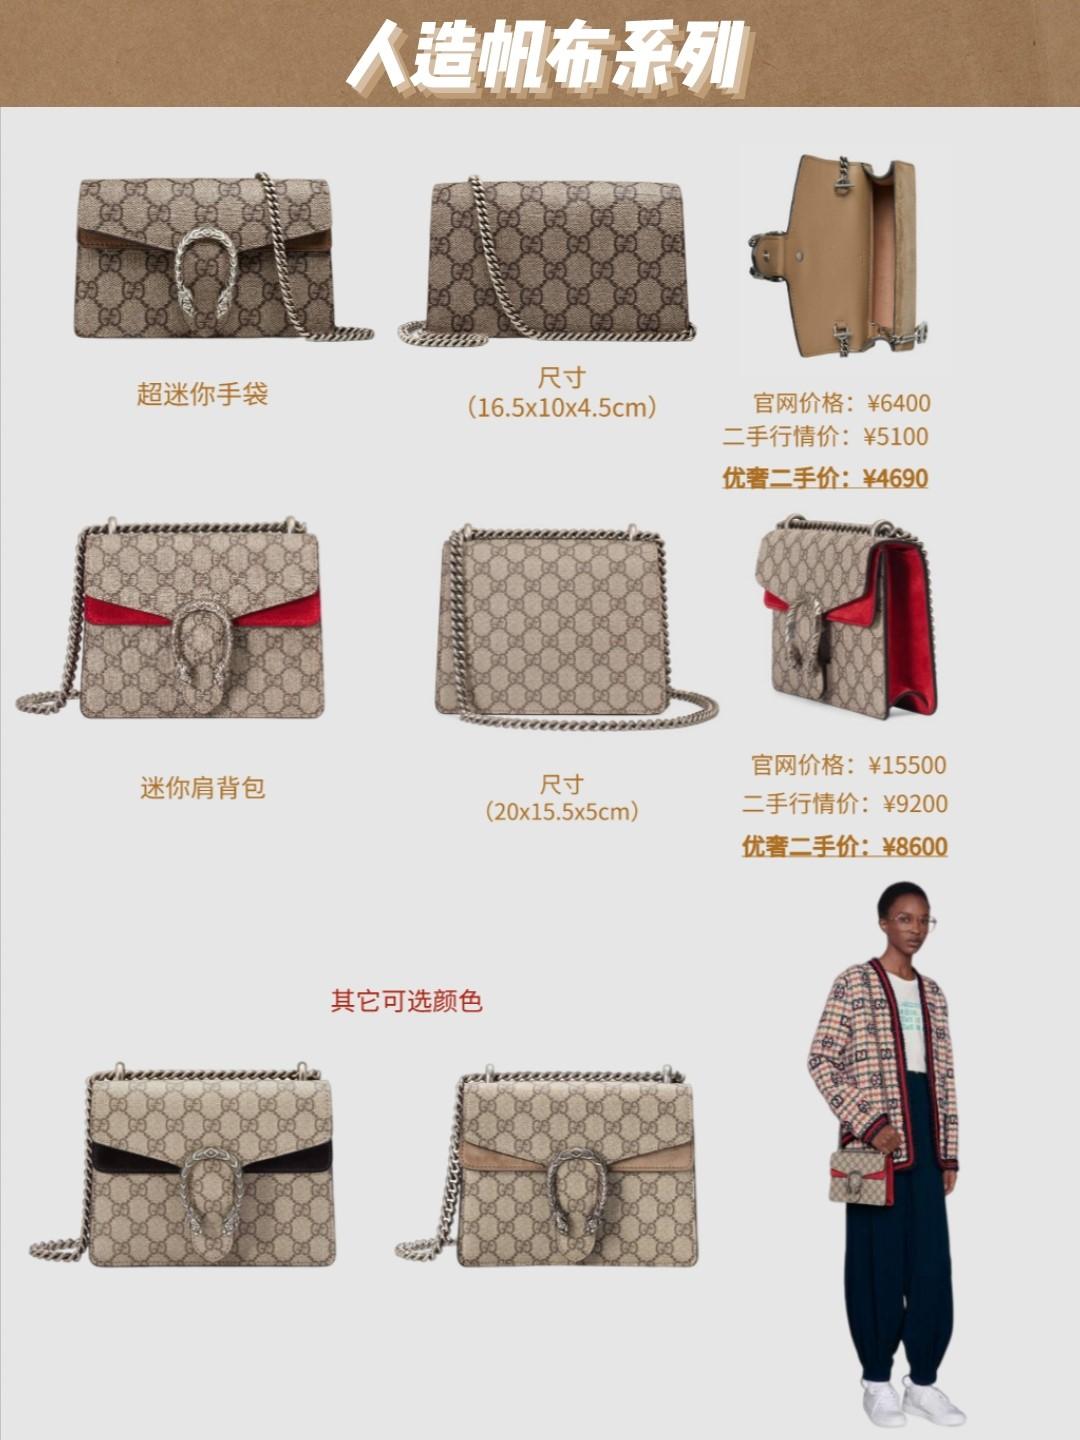 新包 | Gucci Dionysus 酒神包推出手拎包款式：新增手柄设计 - iBag · 包包